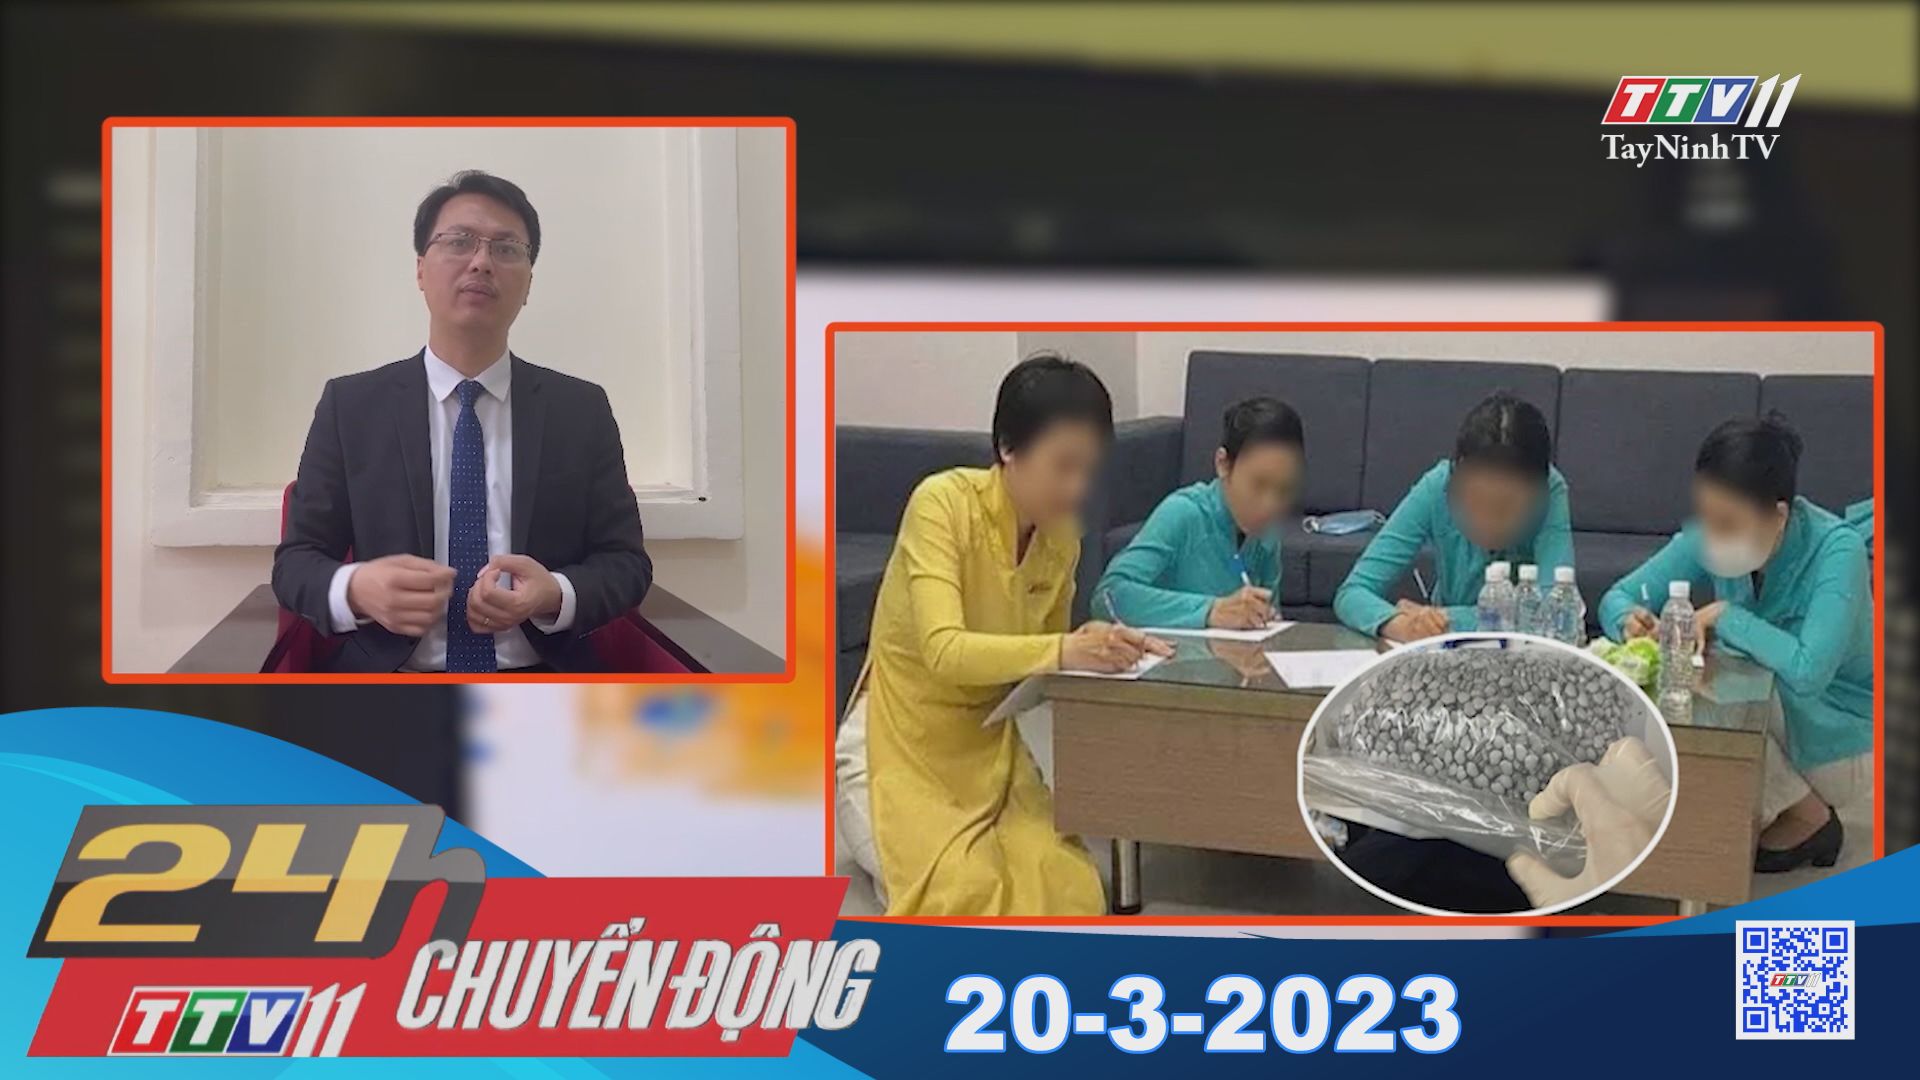 24h Chuyển động 20-3-2023 | Tin tức hôm nay | TayNinhTV